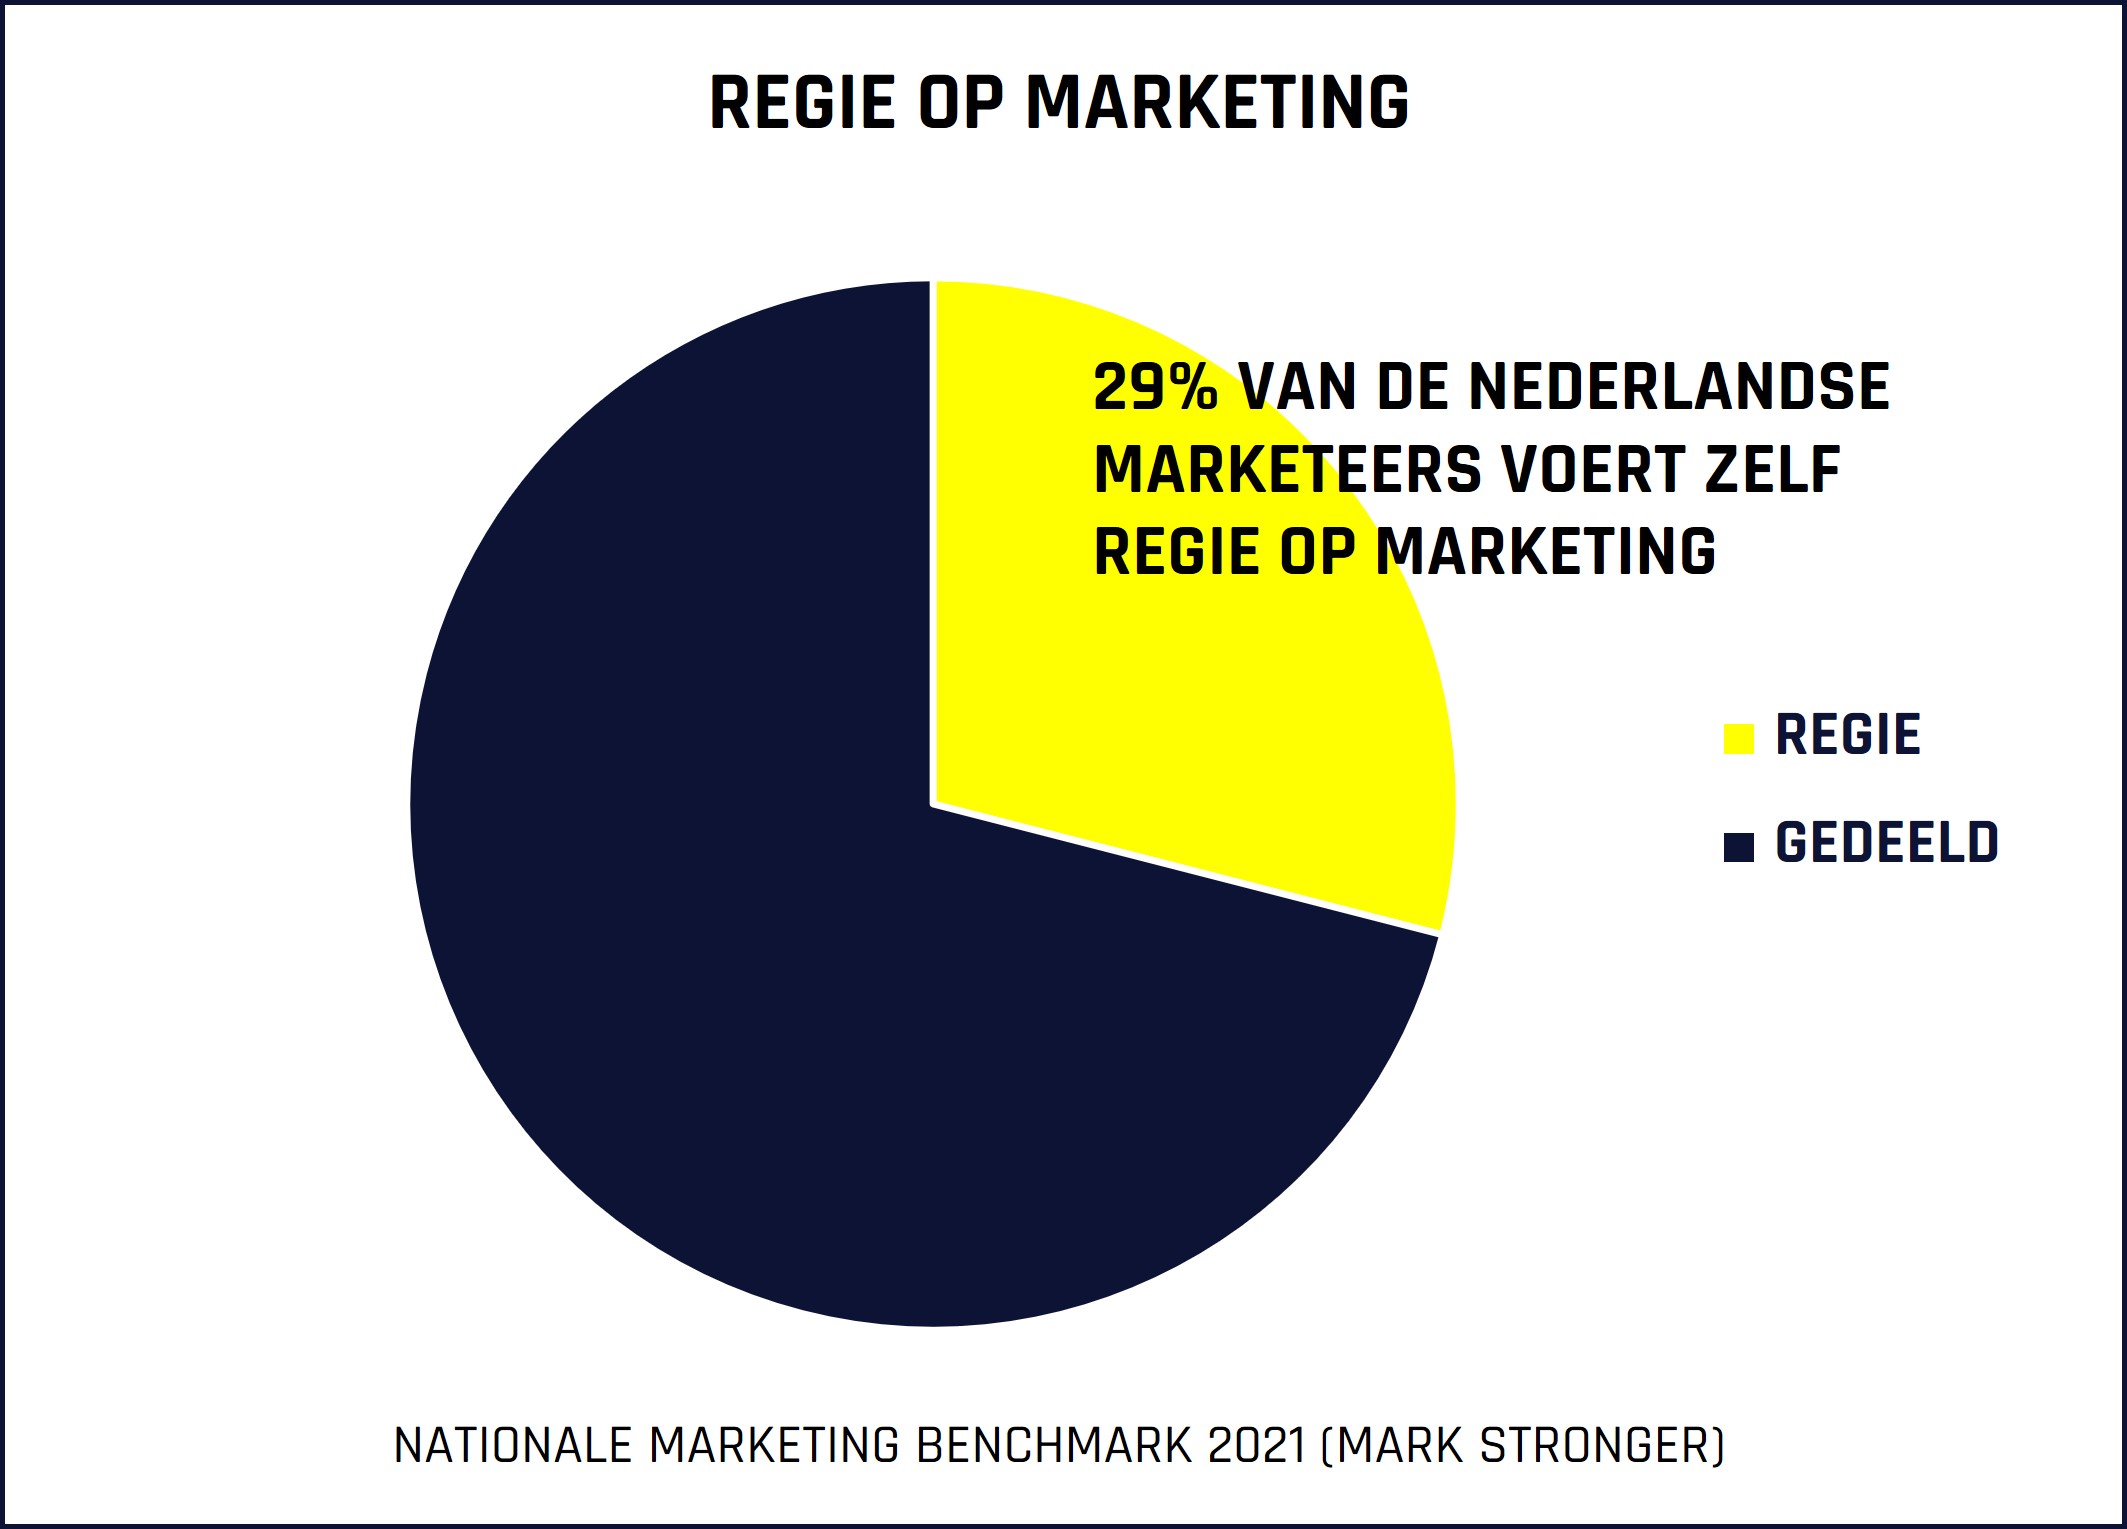 nationale marketing benchmark mark stronger regie marketing merk